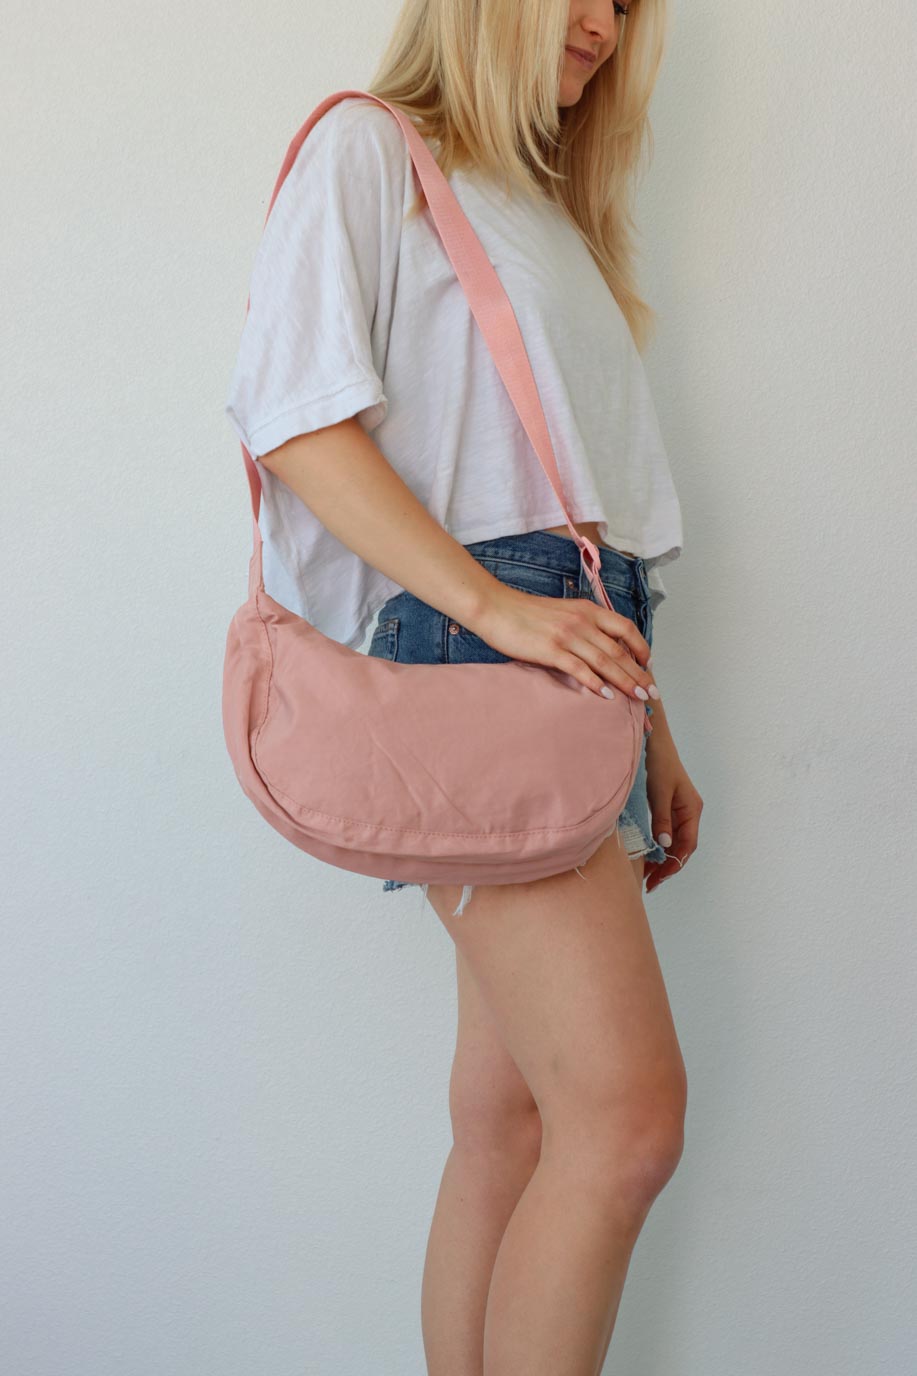 girl carrying pink nylon bag